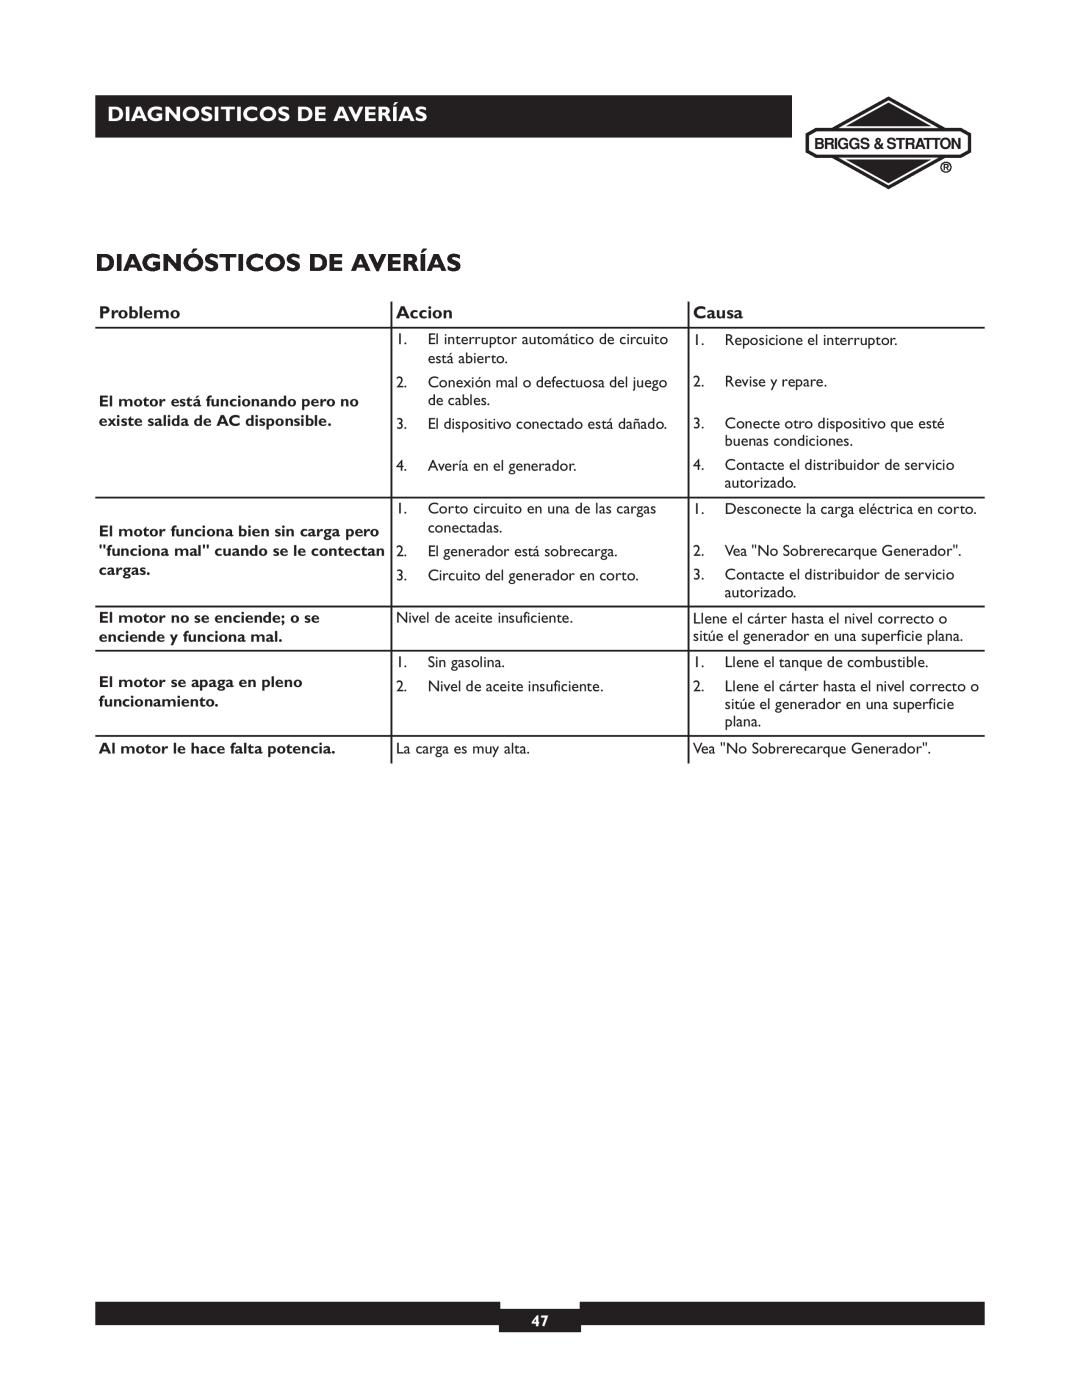 Briggs & Stratton 01532-4 owner manual Diagnósticos De Averías, Diagnositicos De Averías, Problemo, Accion, Causa 